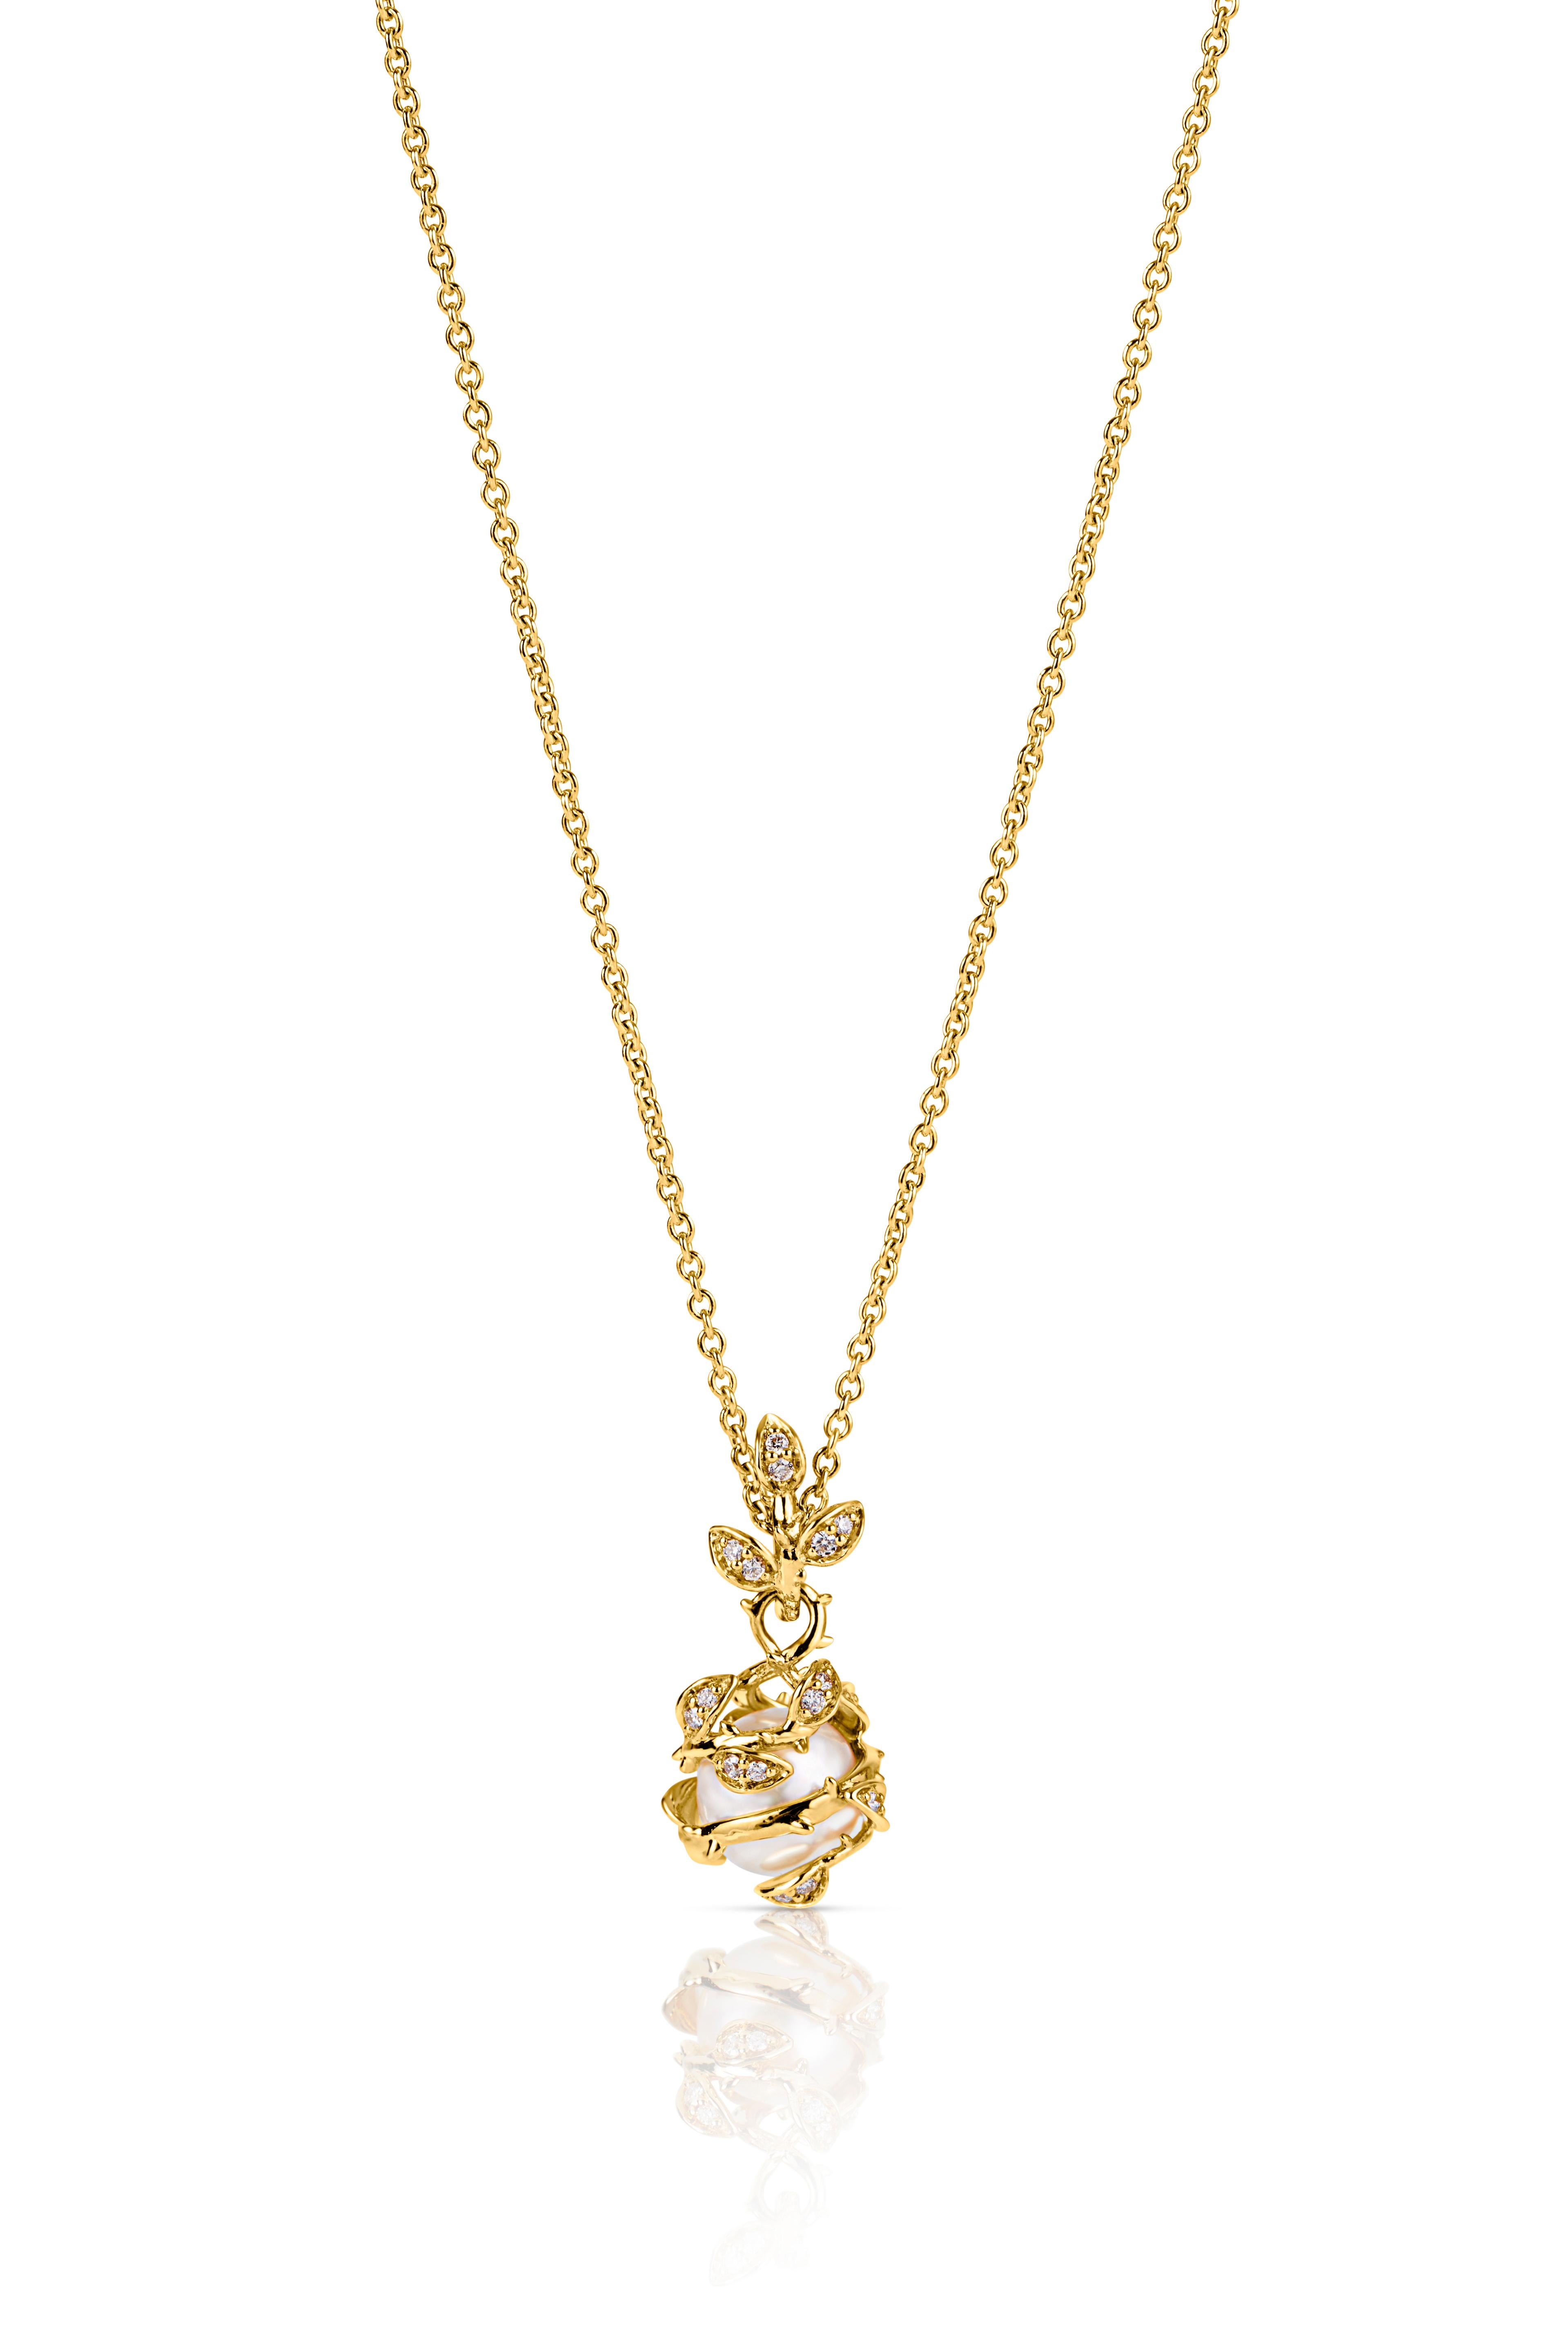 Ce pendentif très complexe composé d'une seule perle d'eau douce, reliée au collier par des vignes de diamants imbriqués, est une pièce de choix. Le pendentif en perles imbriquées, au design discret mais au symbolisme prononcé, représente les